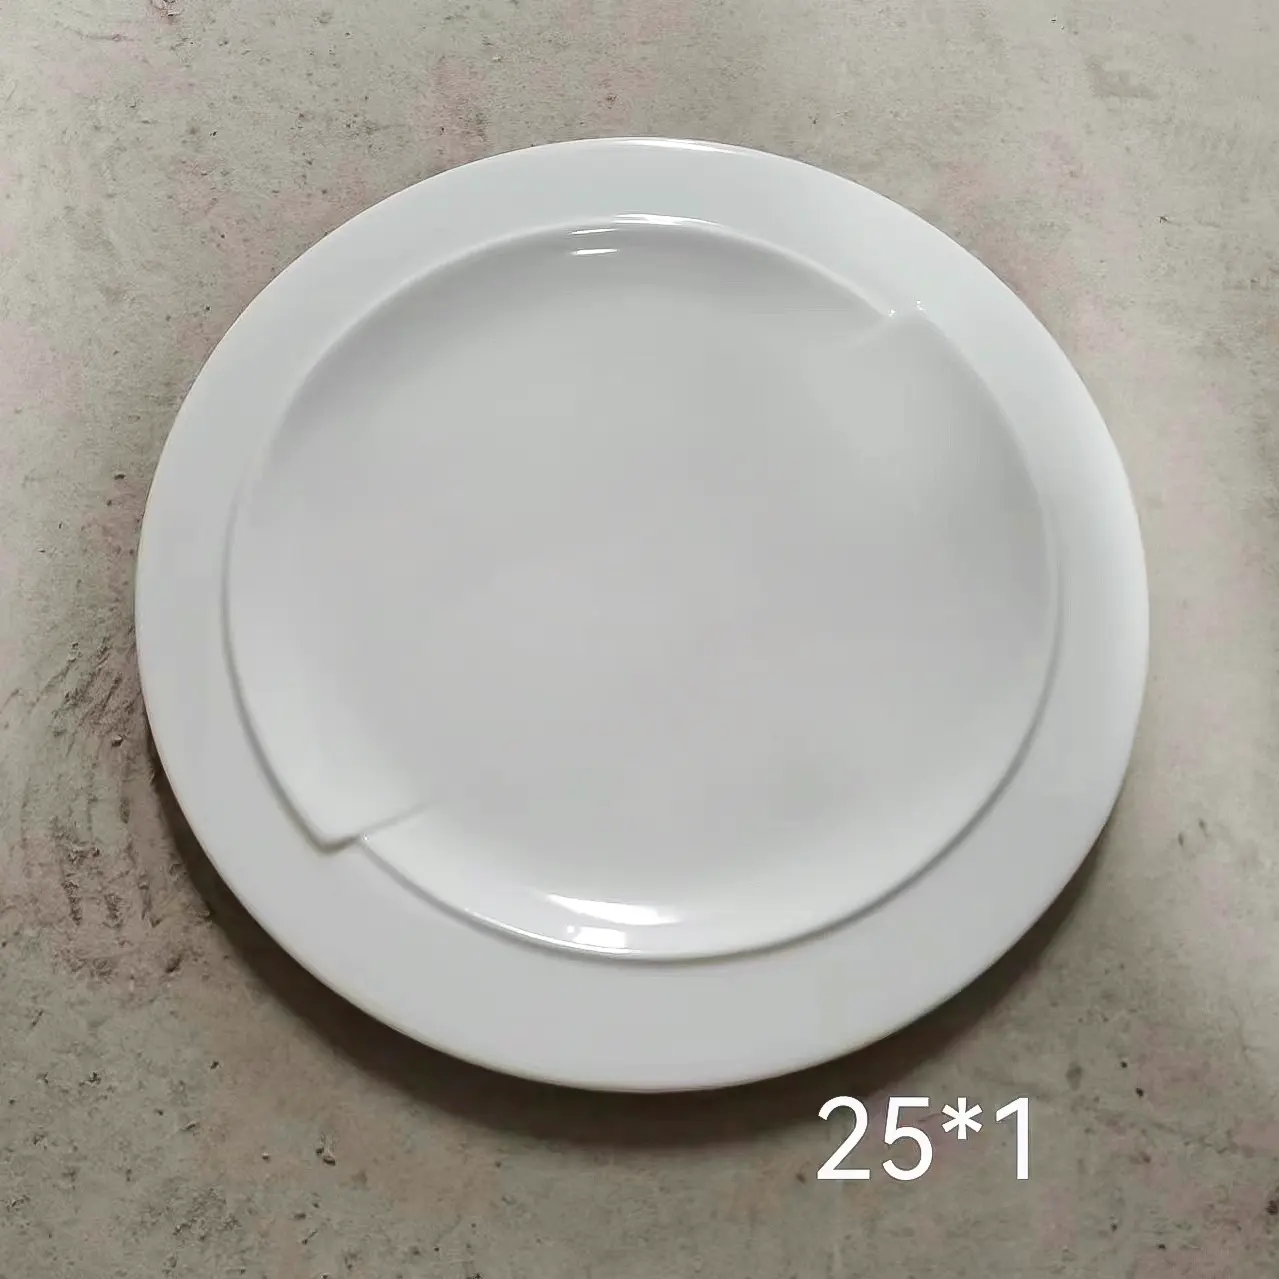 Platos y platos de cerámica con descuento loco, juego de vajilla de cerámica de 10 pulgadas, platos de porcelana, venta de liquidación en stock en China